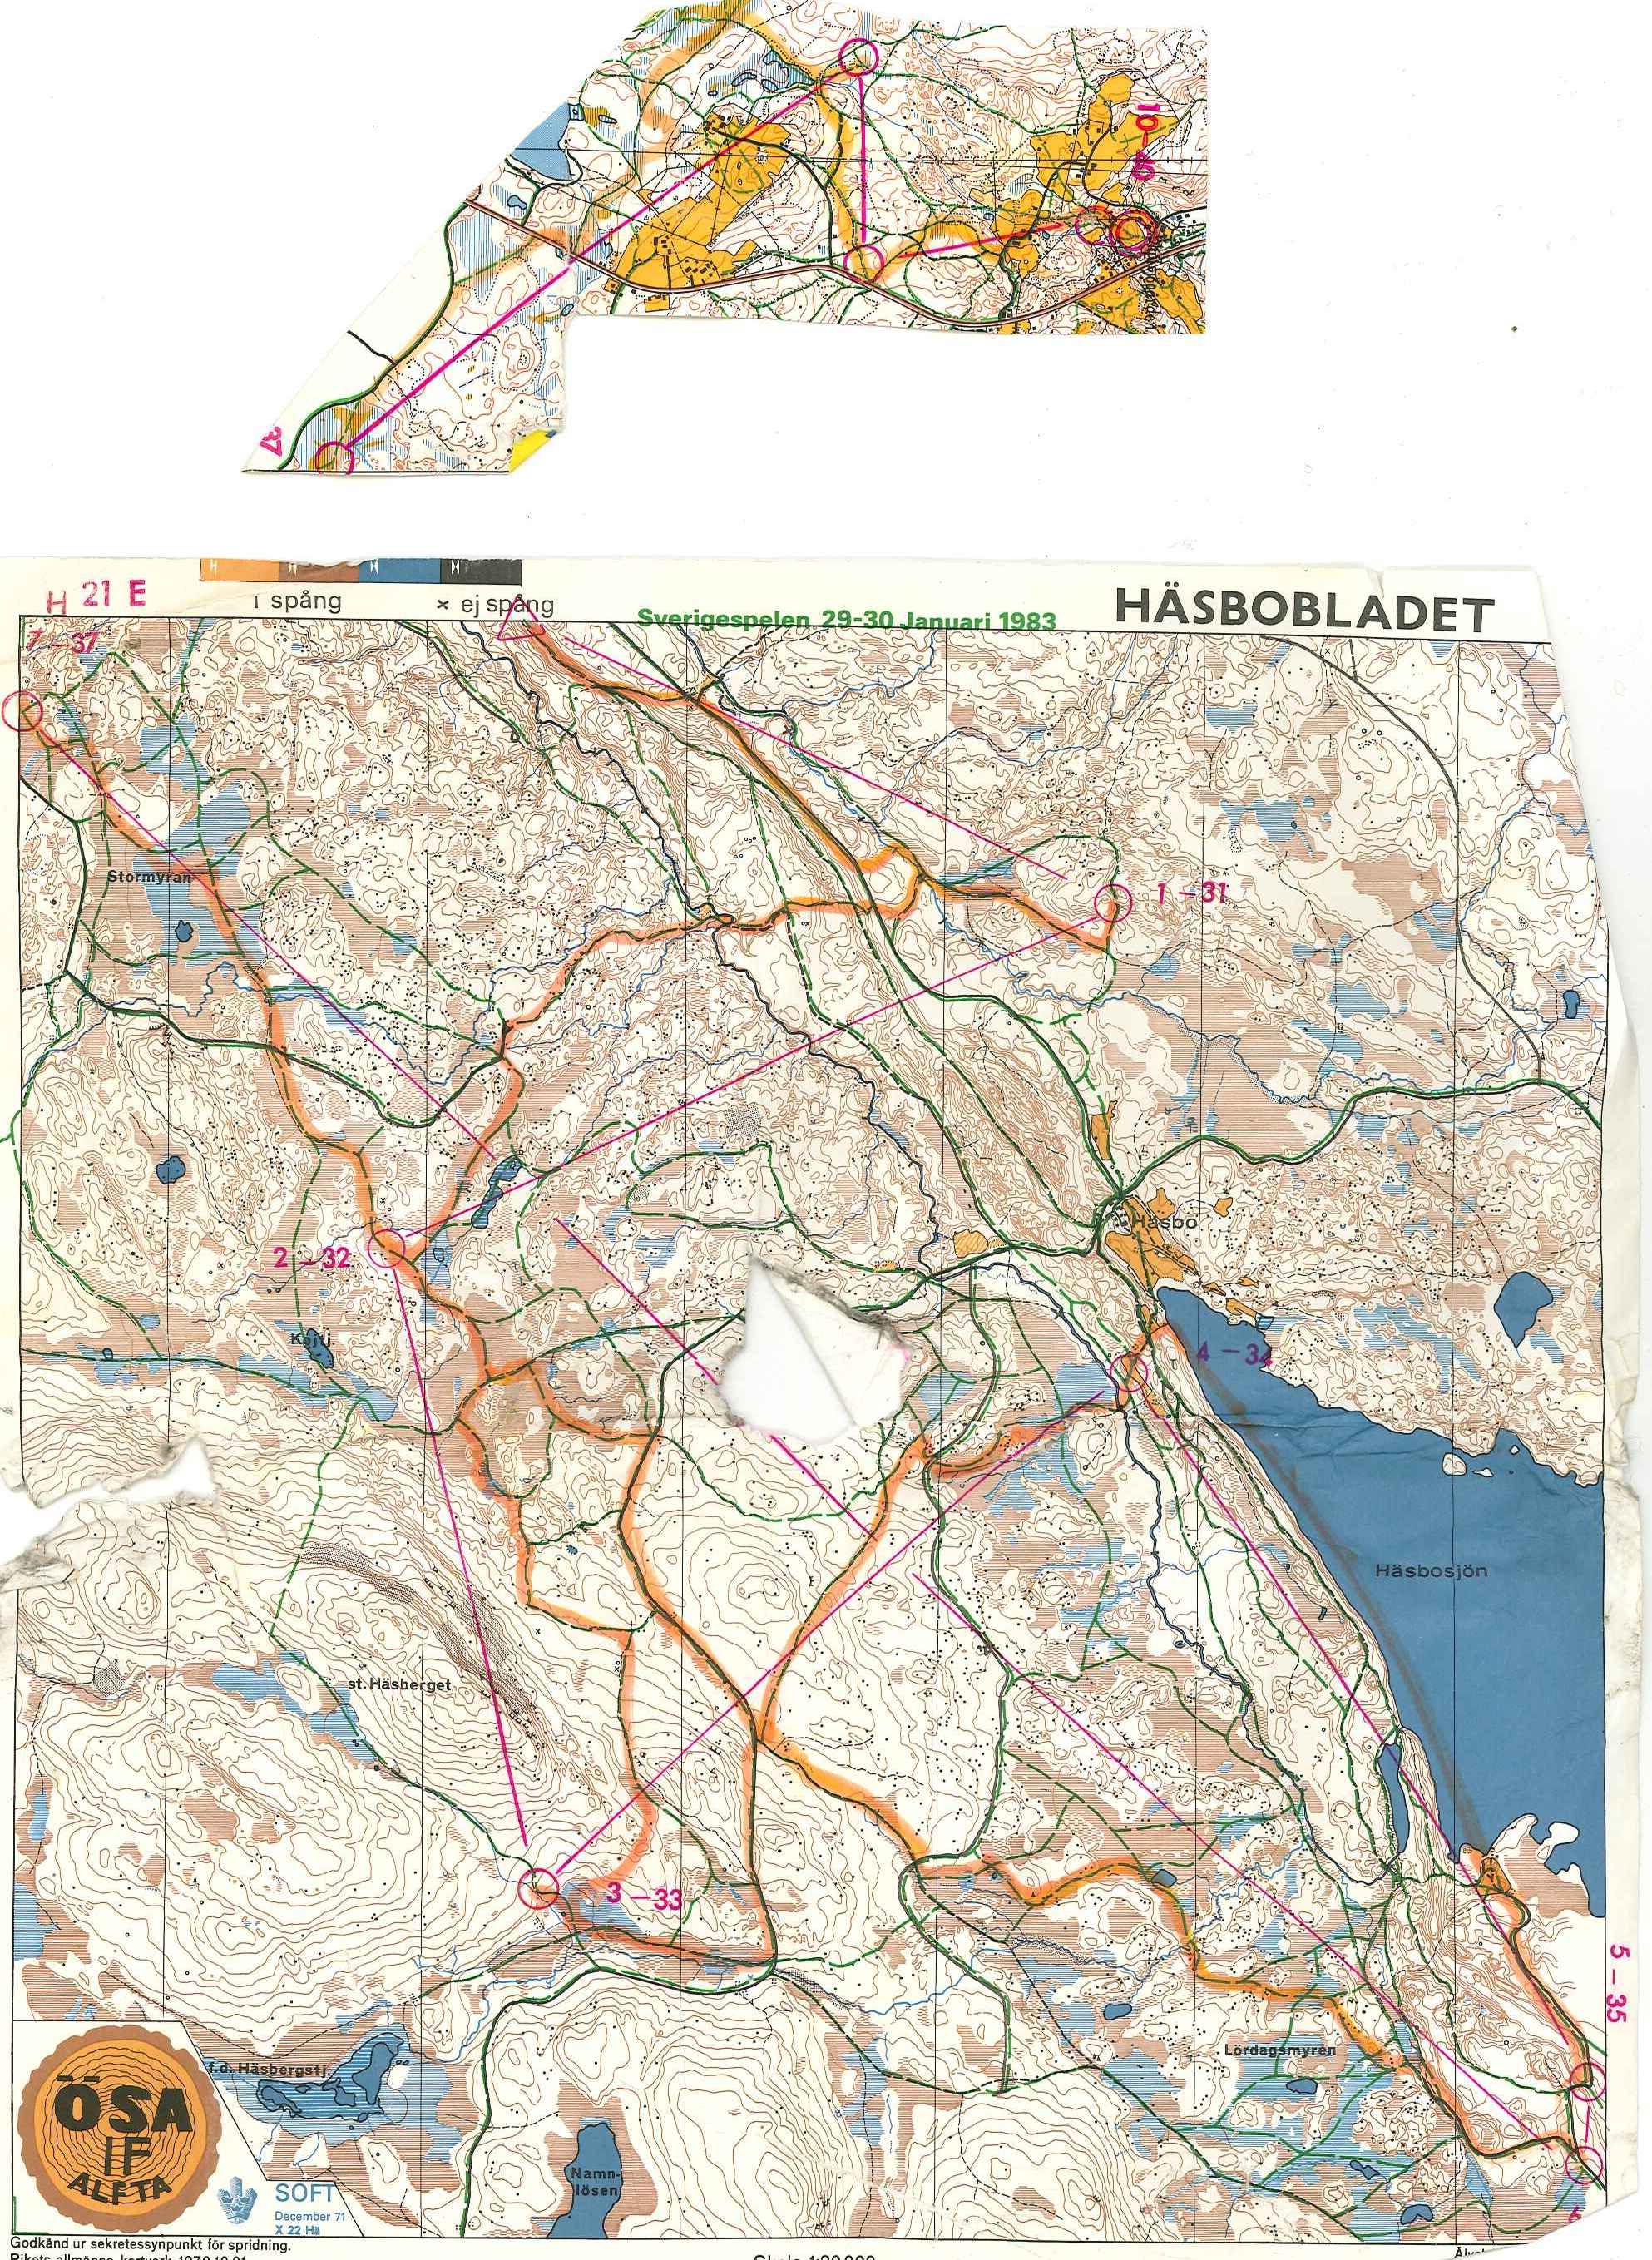 Sverigespelen skidO (29.01.1983)